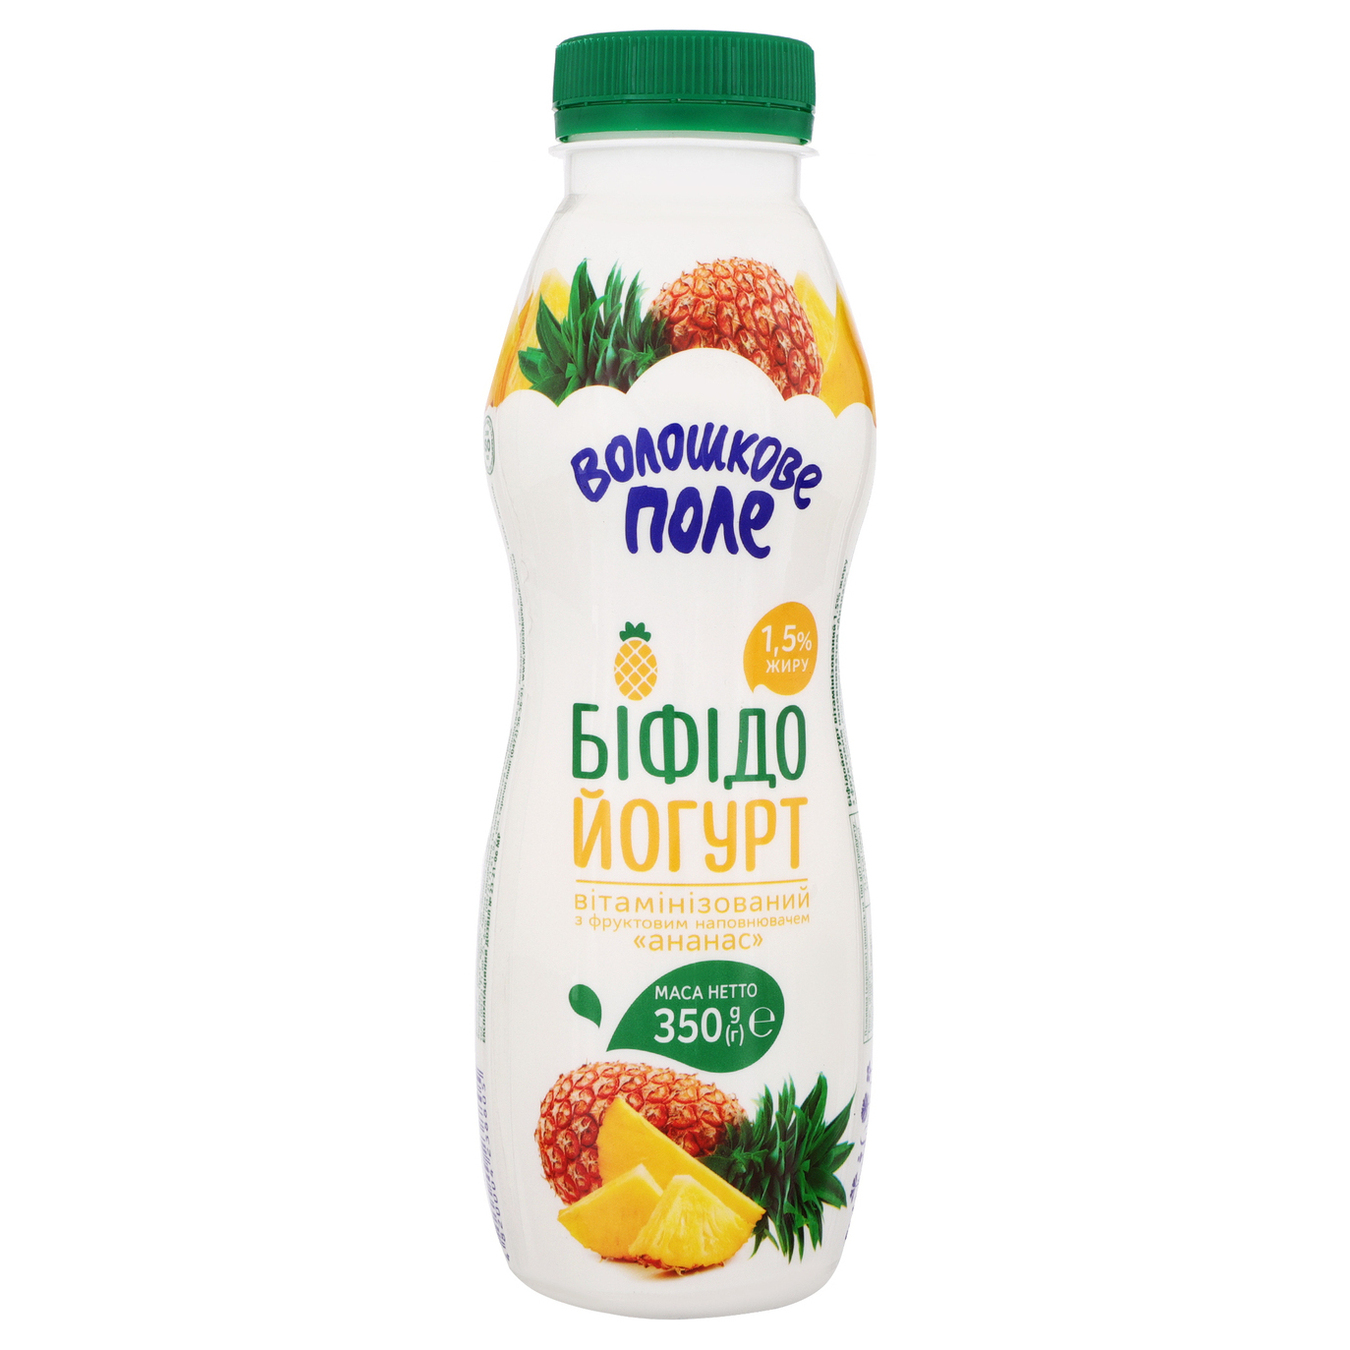 Voloshkove pole Pineapple Bifidoyogurt 1,5% 350g